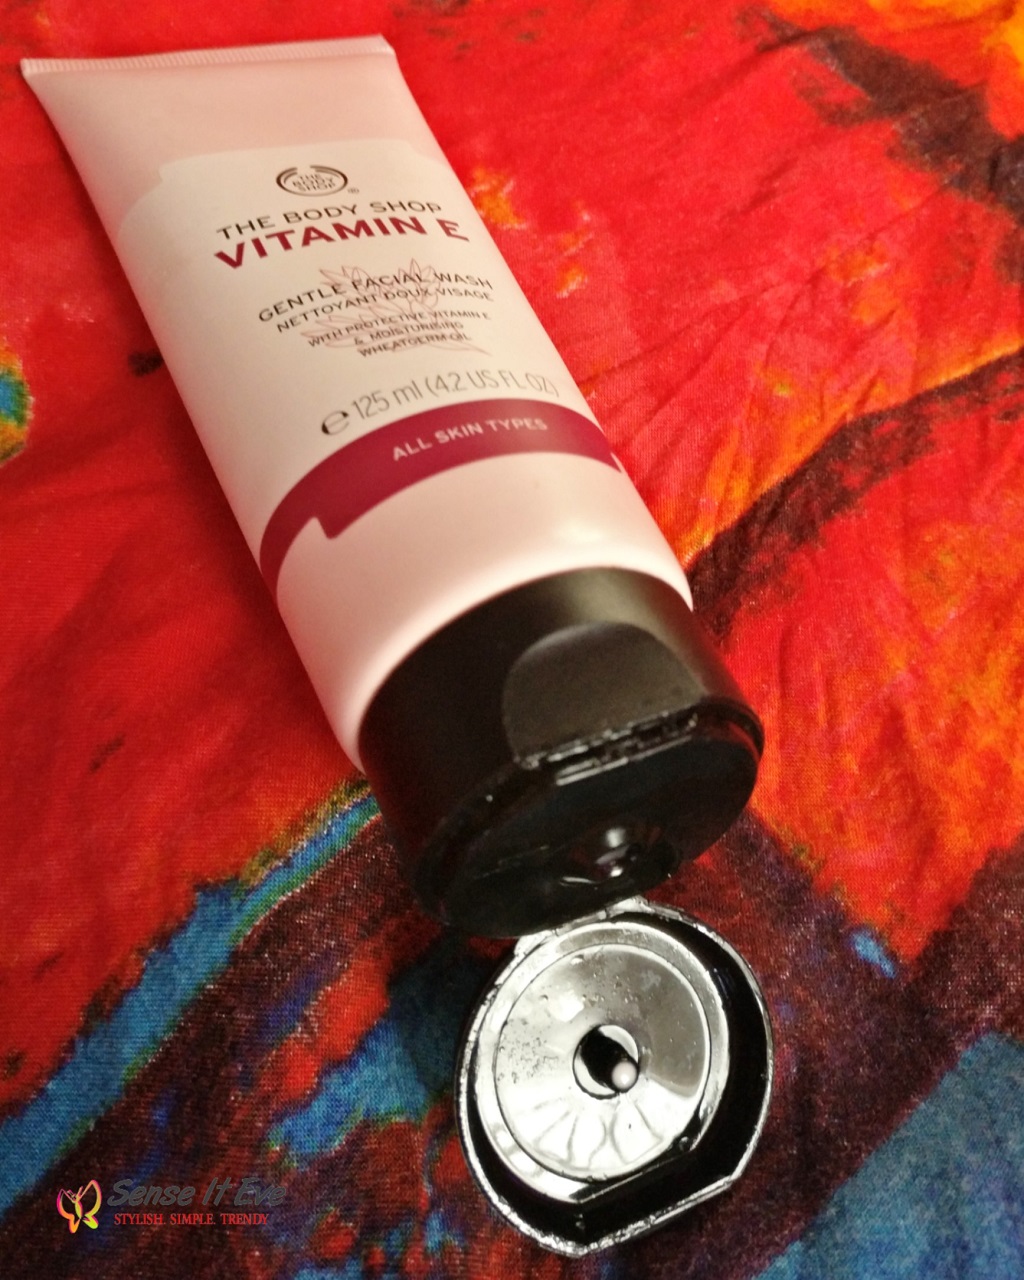 The Body Shop Vitamin E Gentle Facial Wash Packaging Sense It Eve The Body Shop Vitamin E Gentle Facial Wash